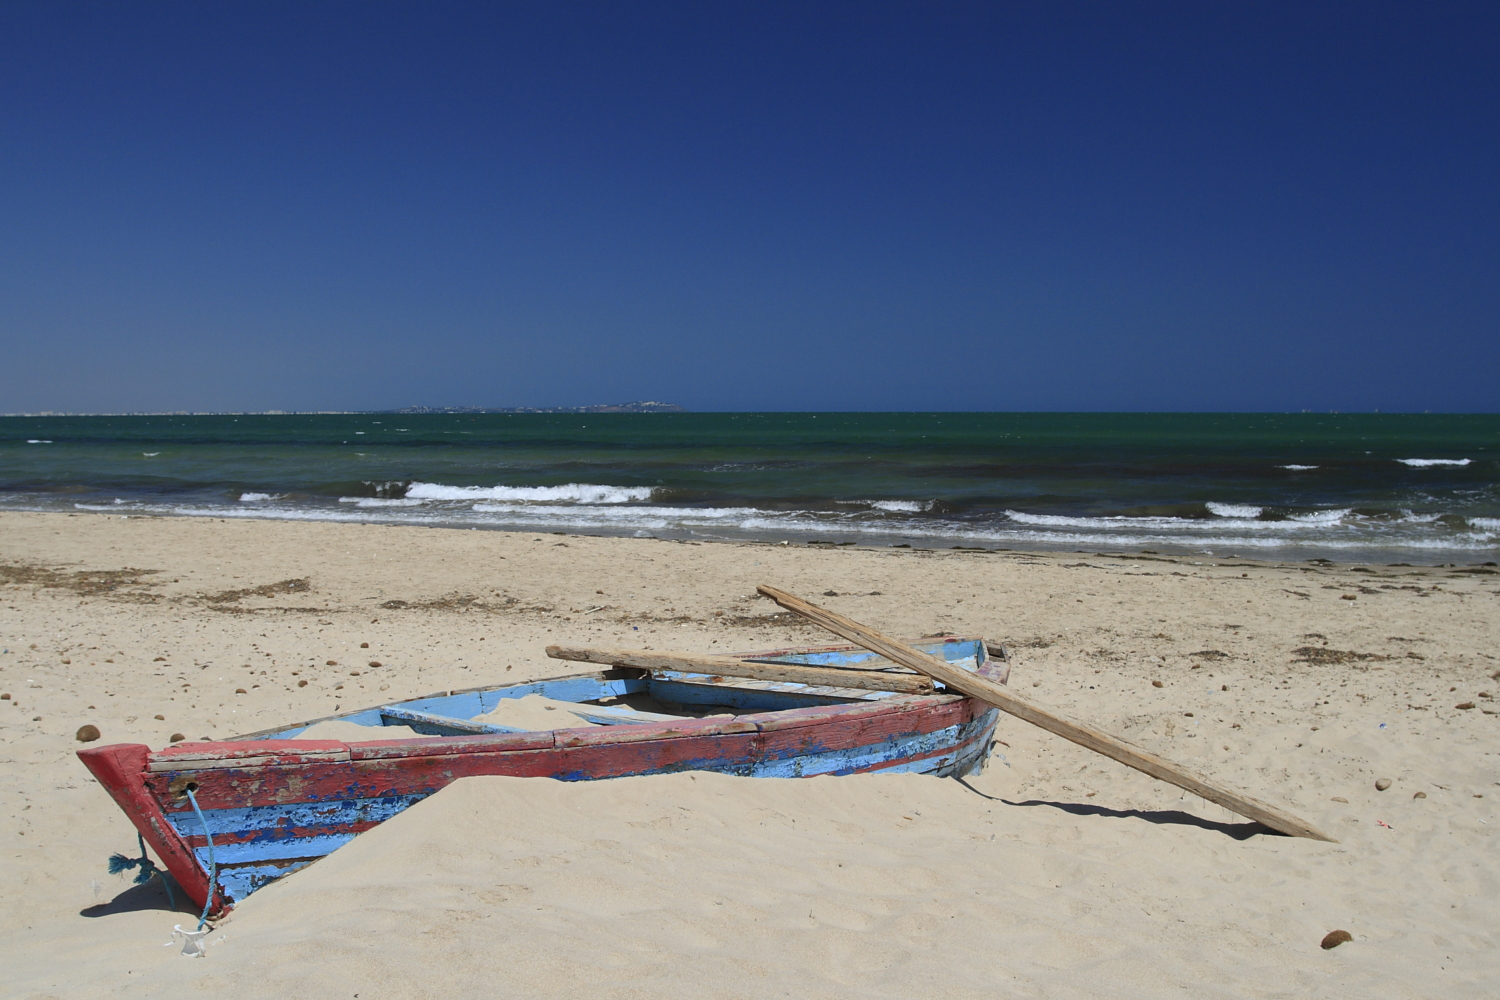 Zdjęcie Sidi Rais beach poparte klifami